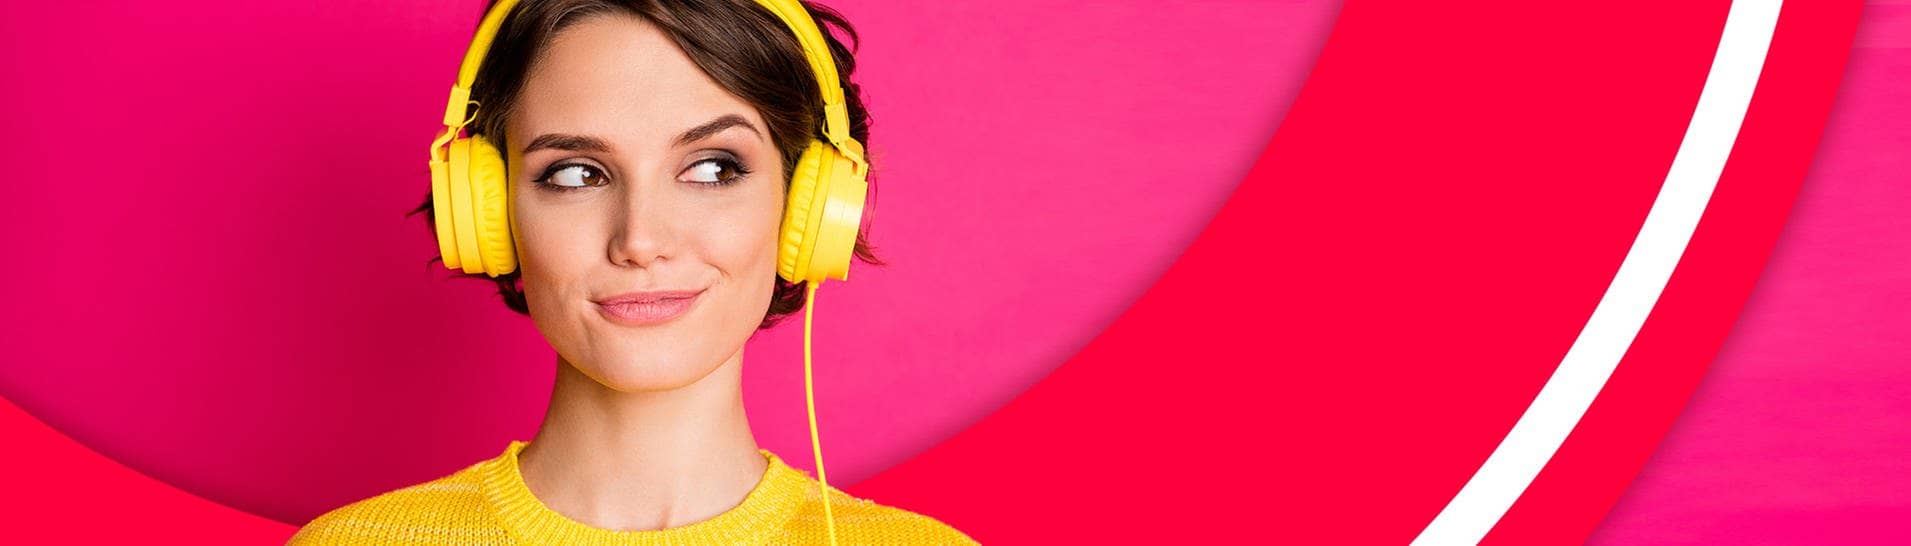 Frau hört Audioreihen und Podcast auf dem Kopfhörer